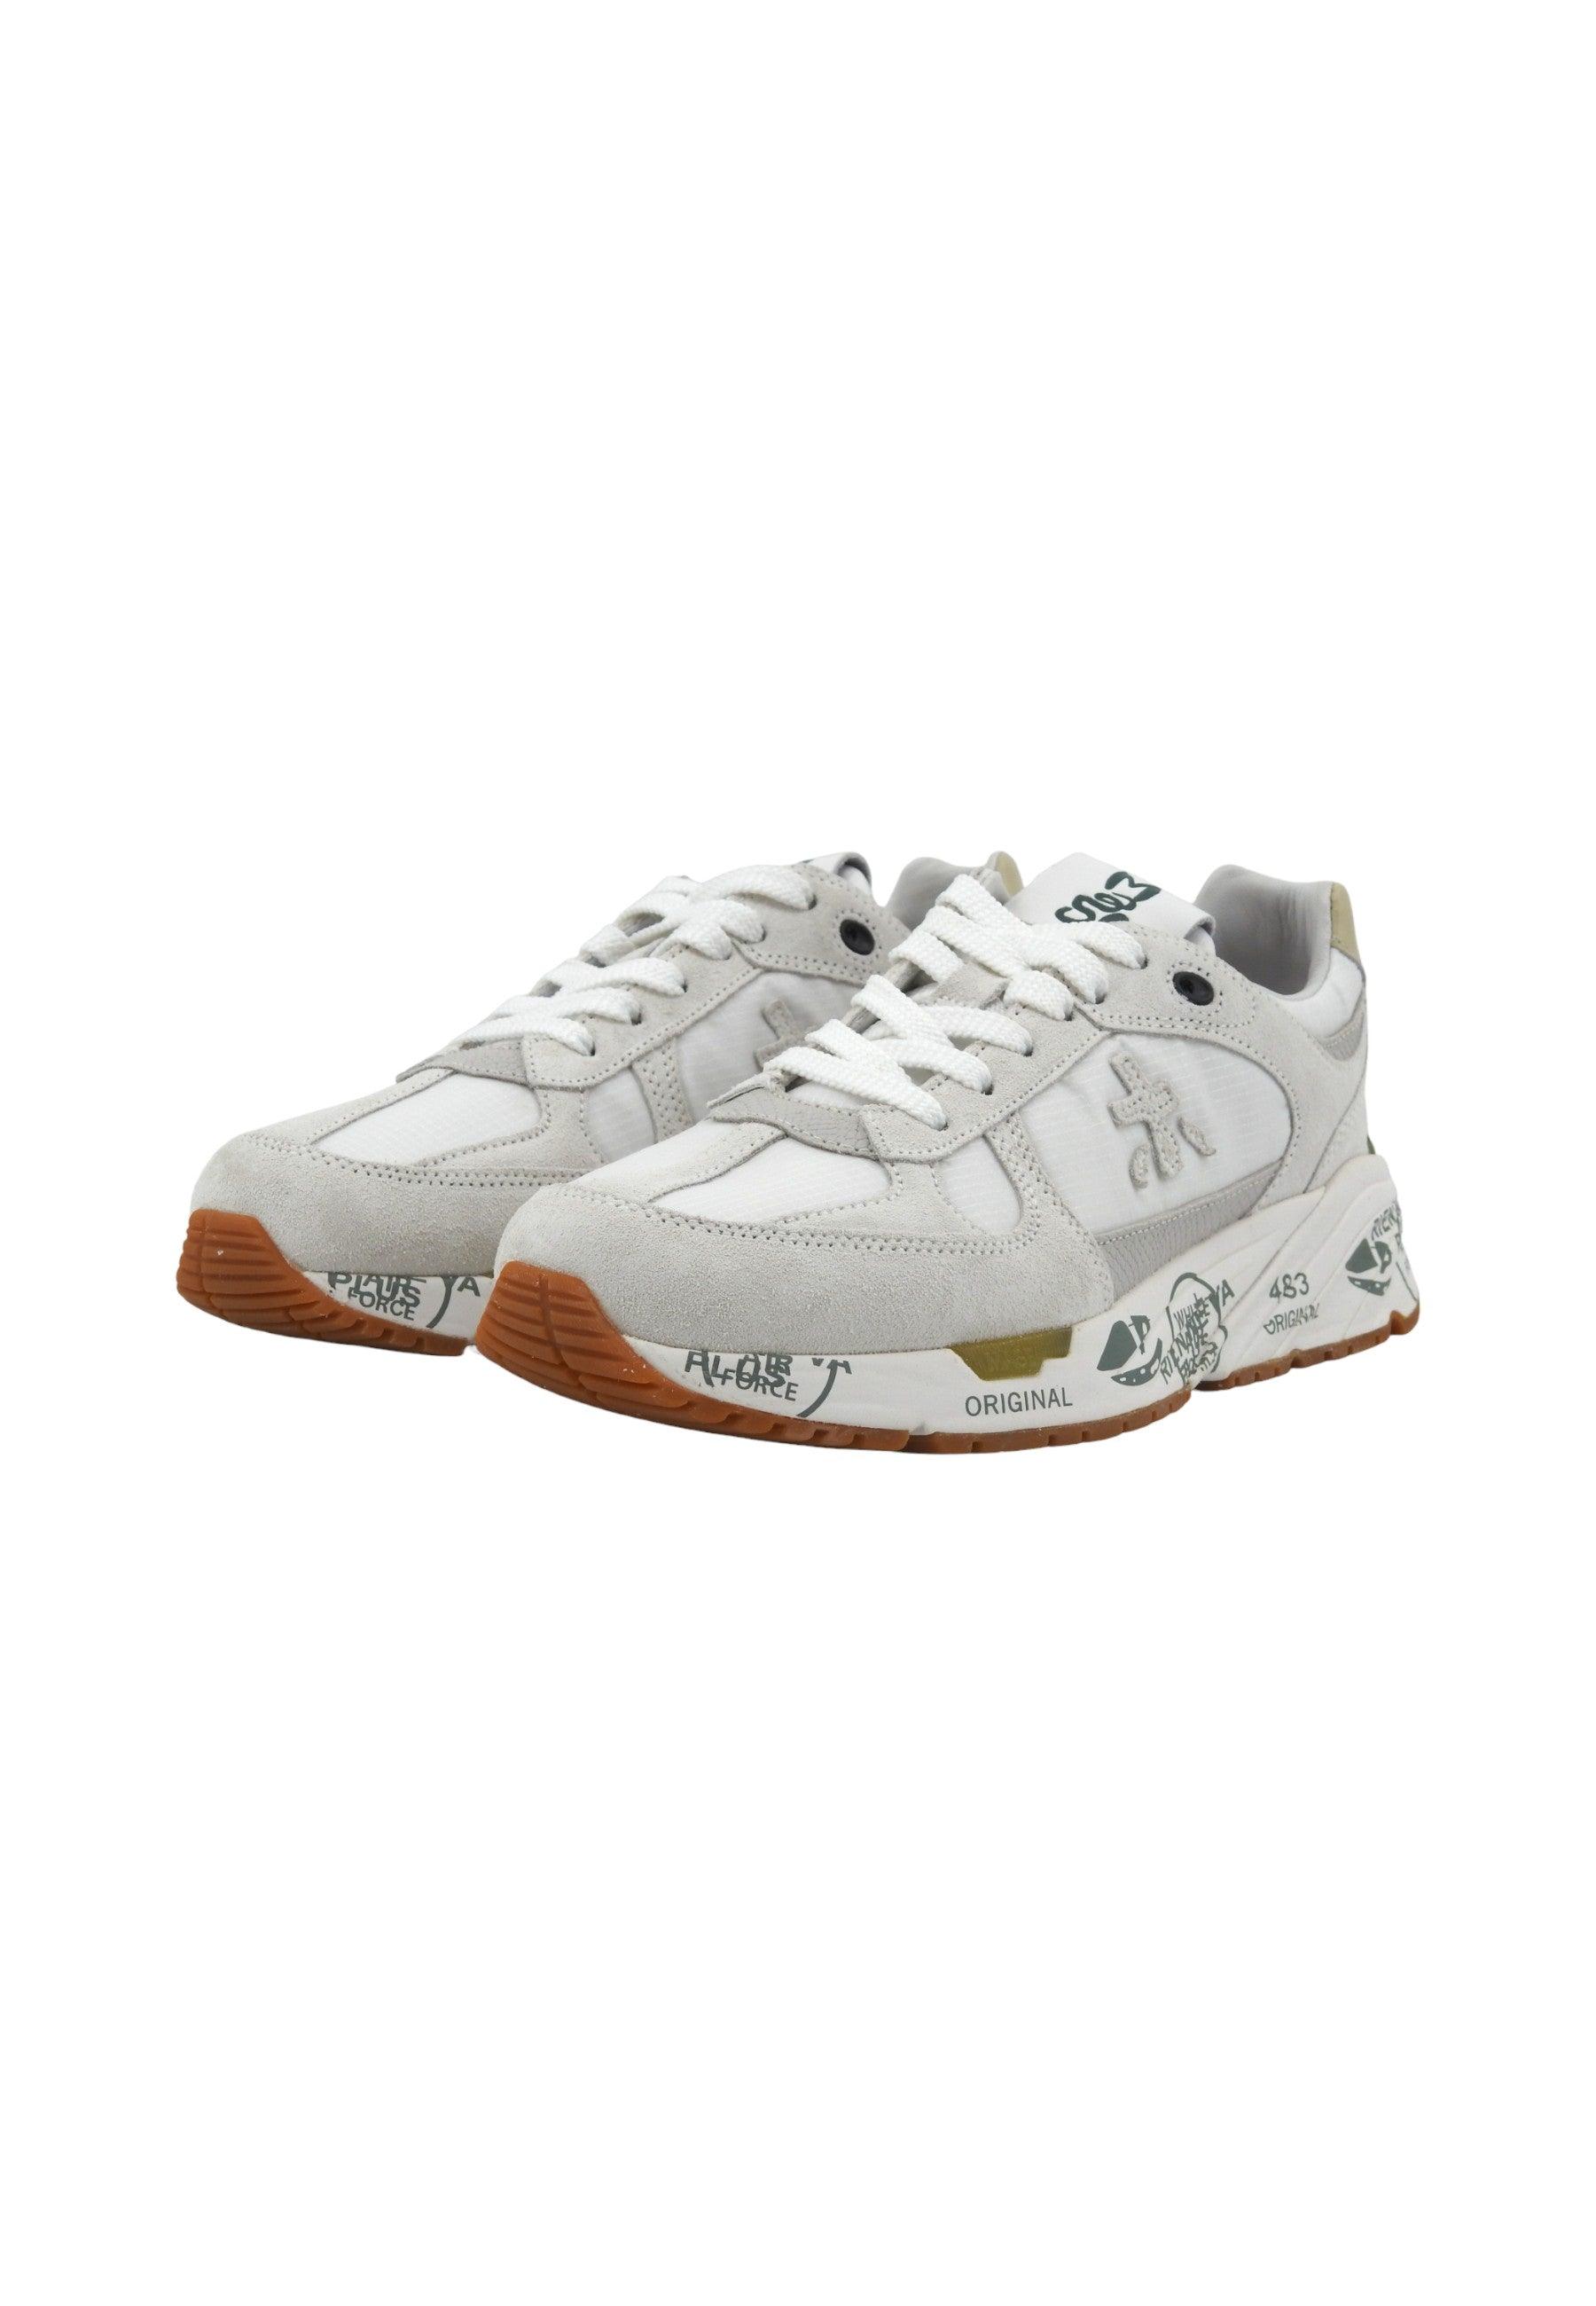 PREMIATA Sneaker Donna White Light Grey MASED-5661 - Sandrini Calzature e Abbigliamento